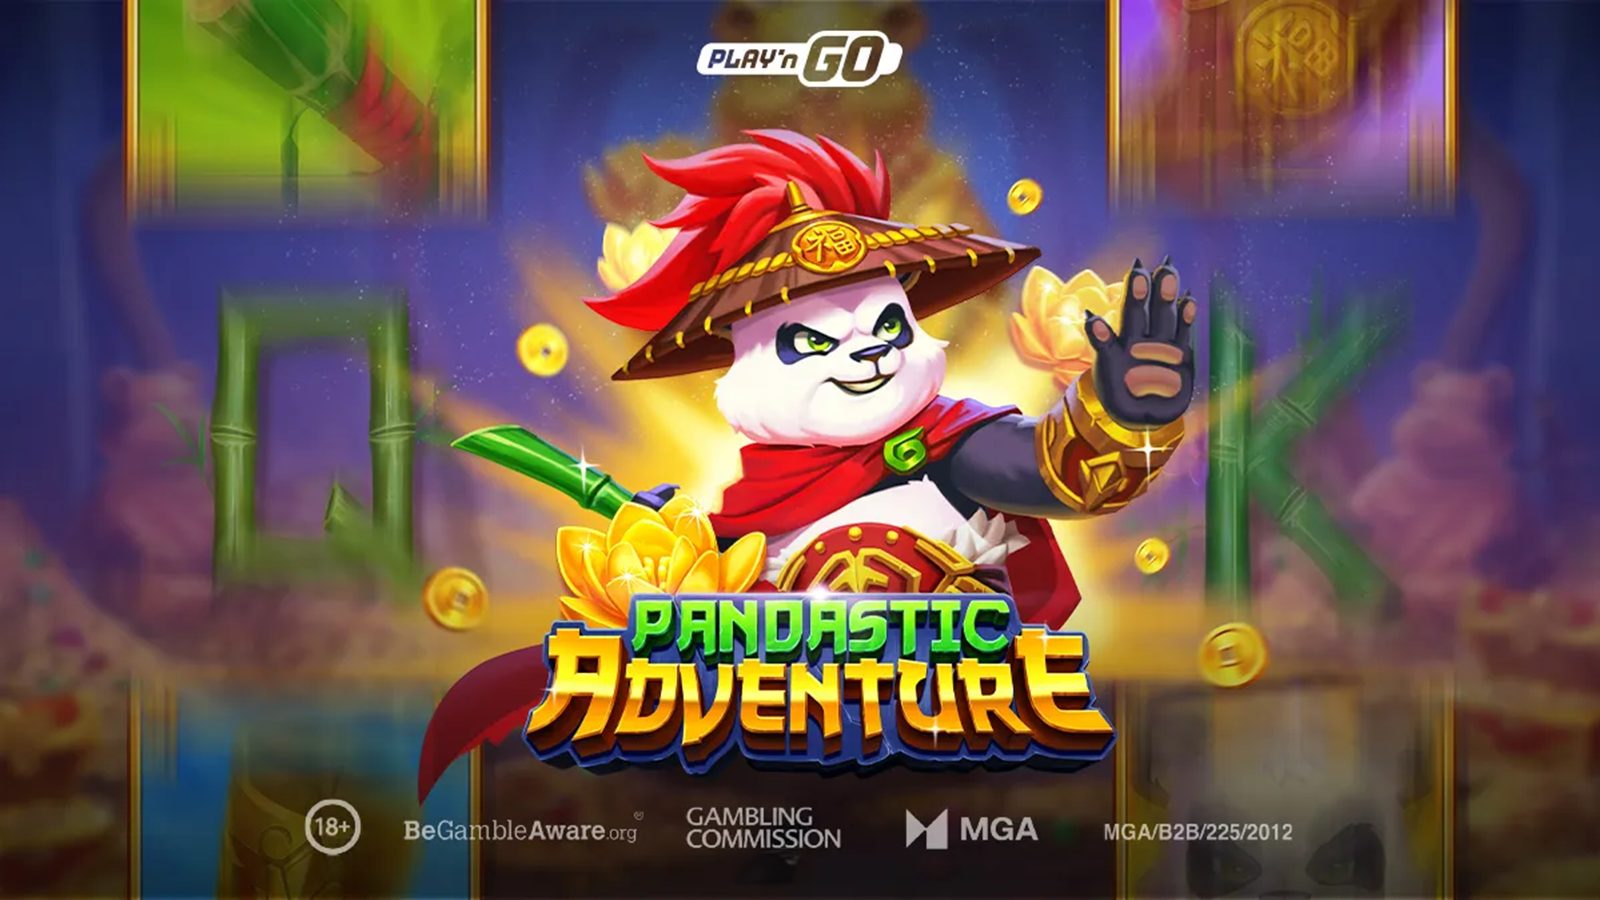 Pandastic Adventure by Play'n GO